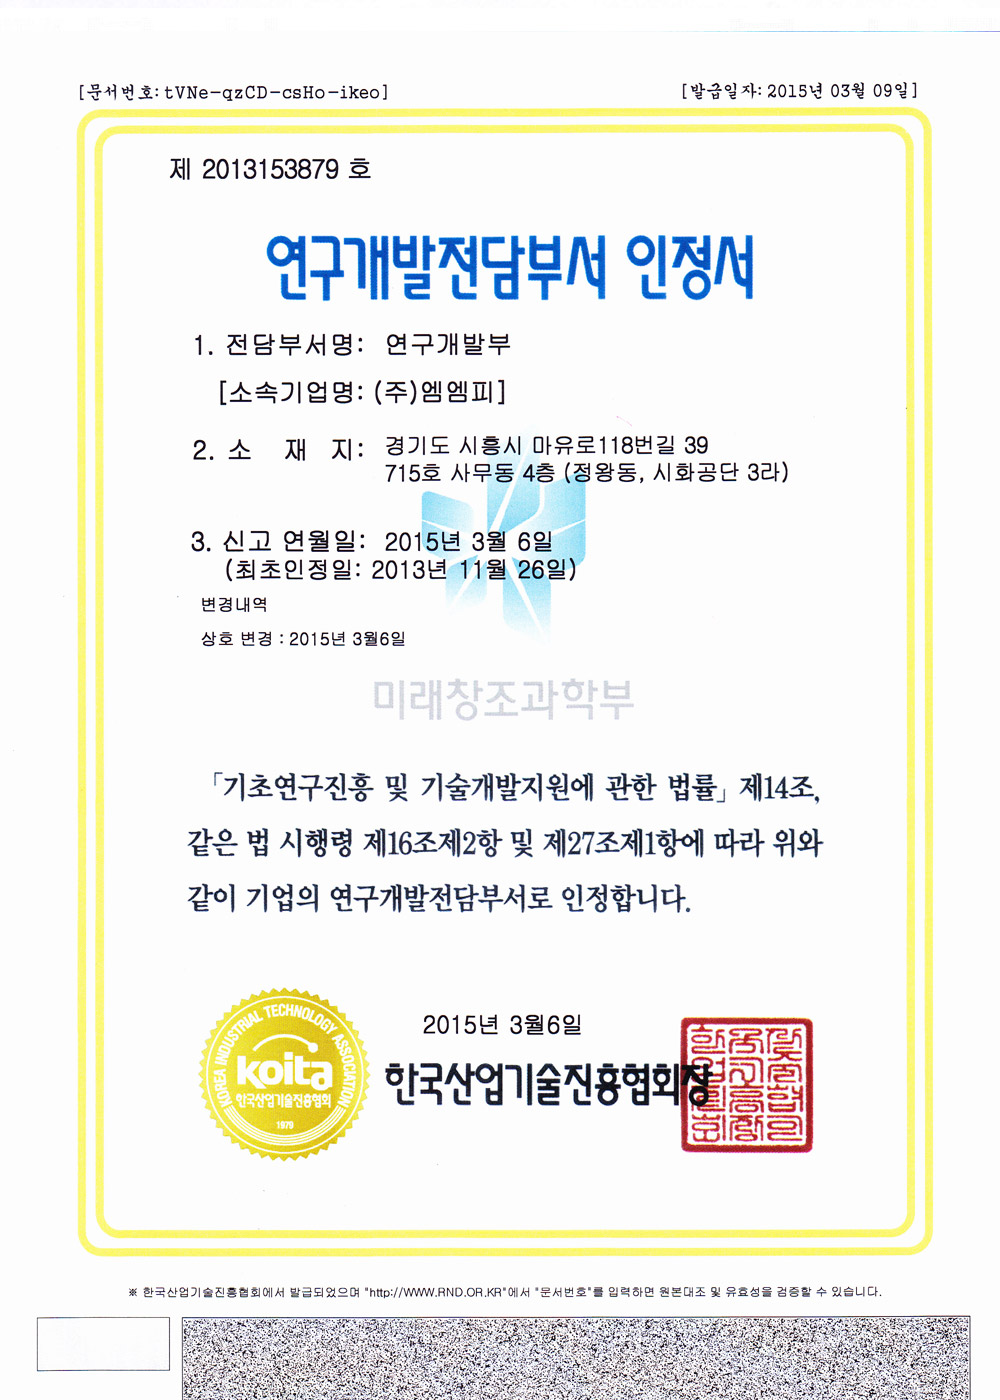 Research Institute Certificate